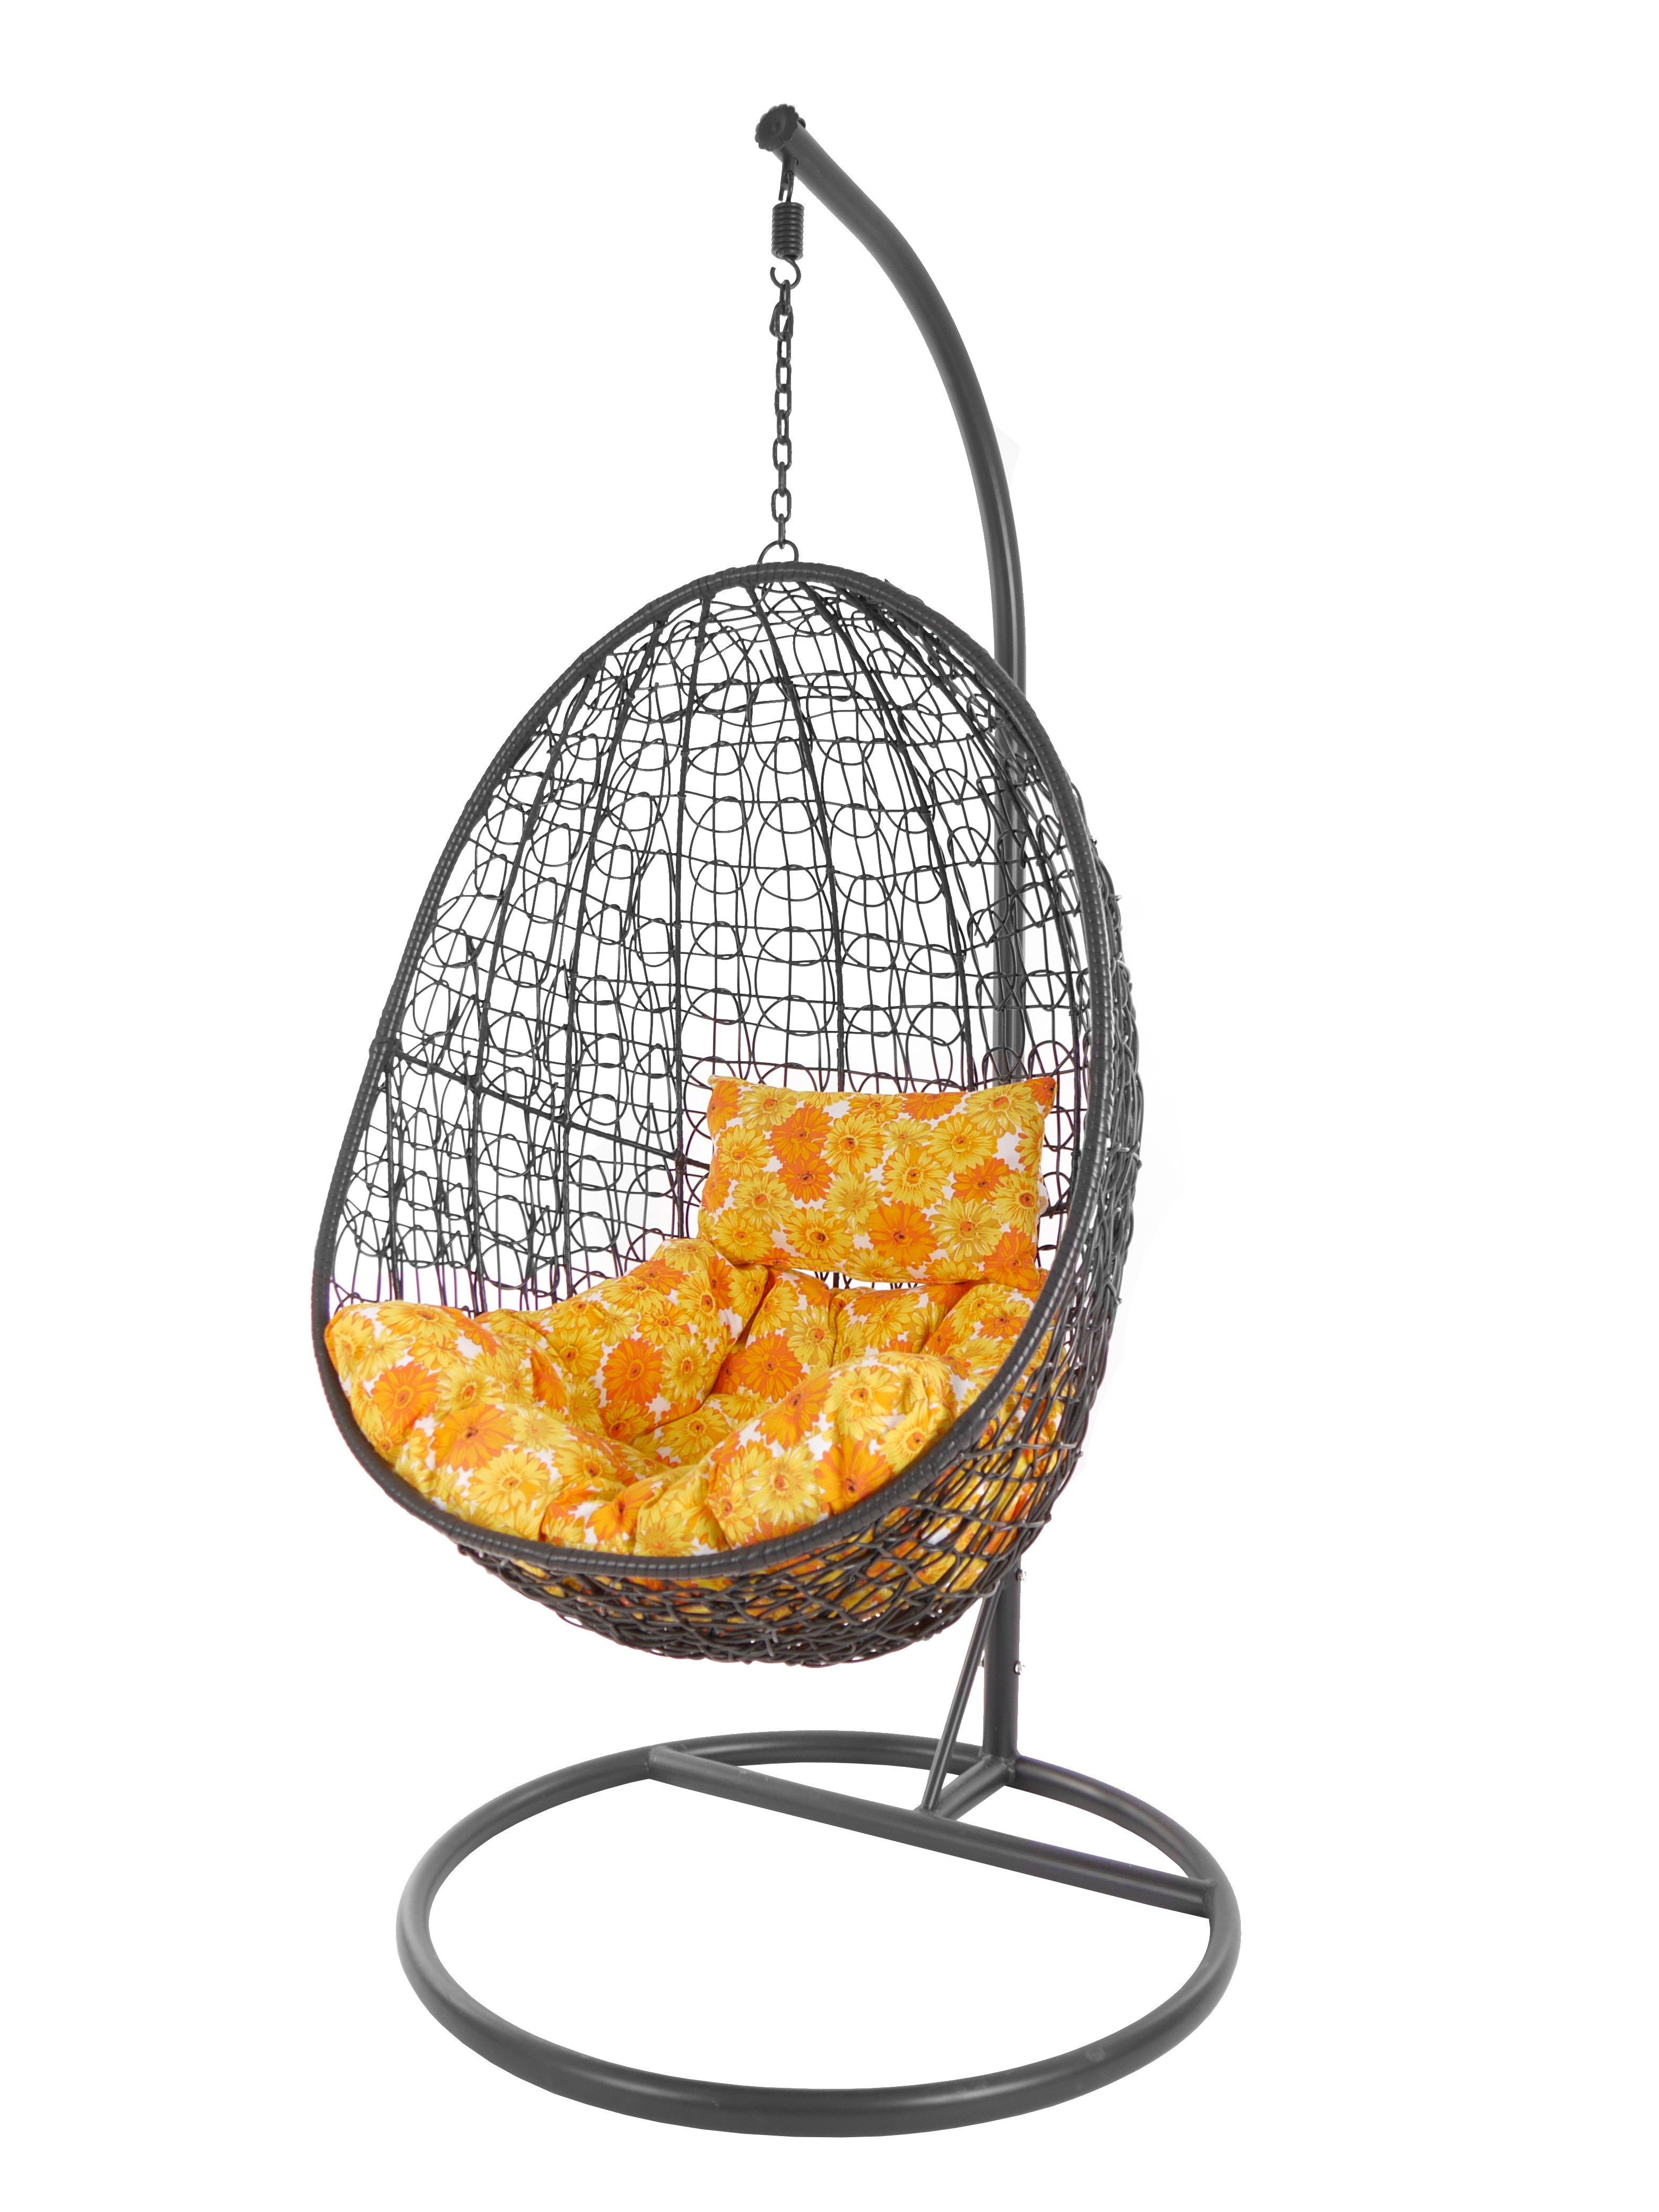 KIDEO Hängesessel Hängesessel Capdepera anthrazit, moderner Swing Chair, Schwebesessel mit Gestell und Kissen, Loungemöbel sonnenblumen (2300 sunflower)